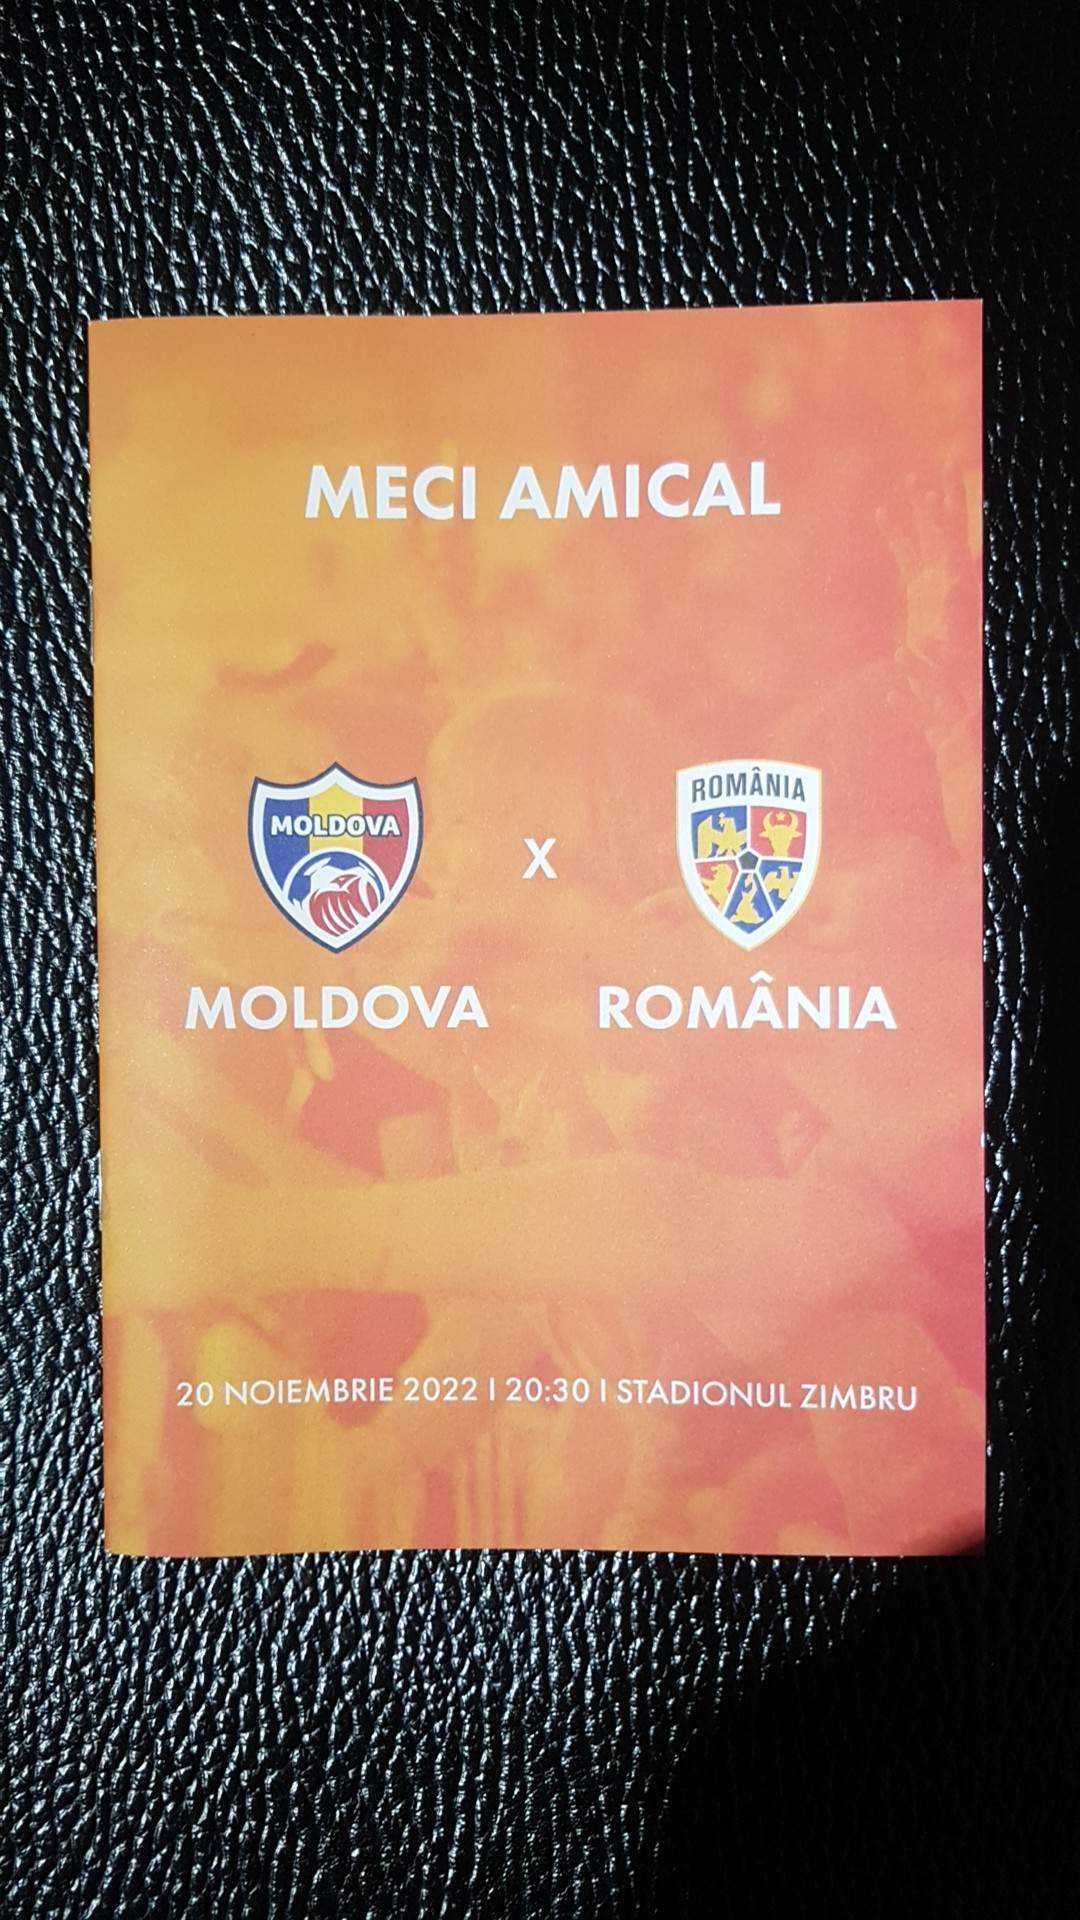 Moldova vs Romania 20.11.2022  program de meci